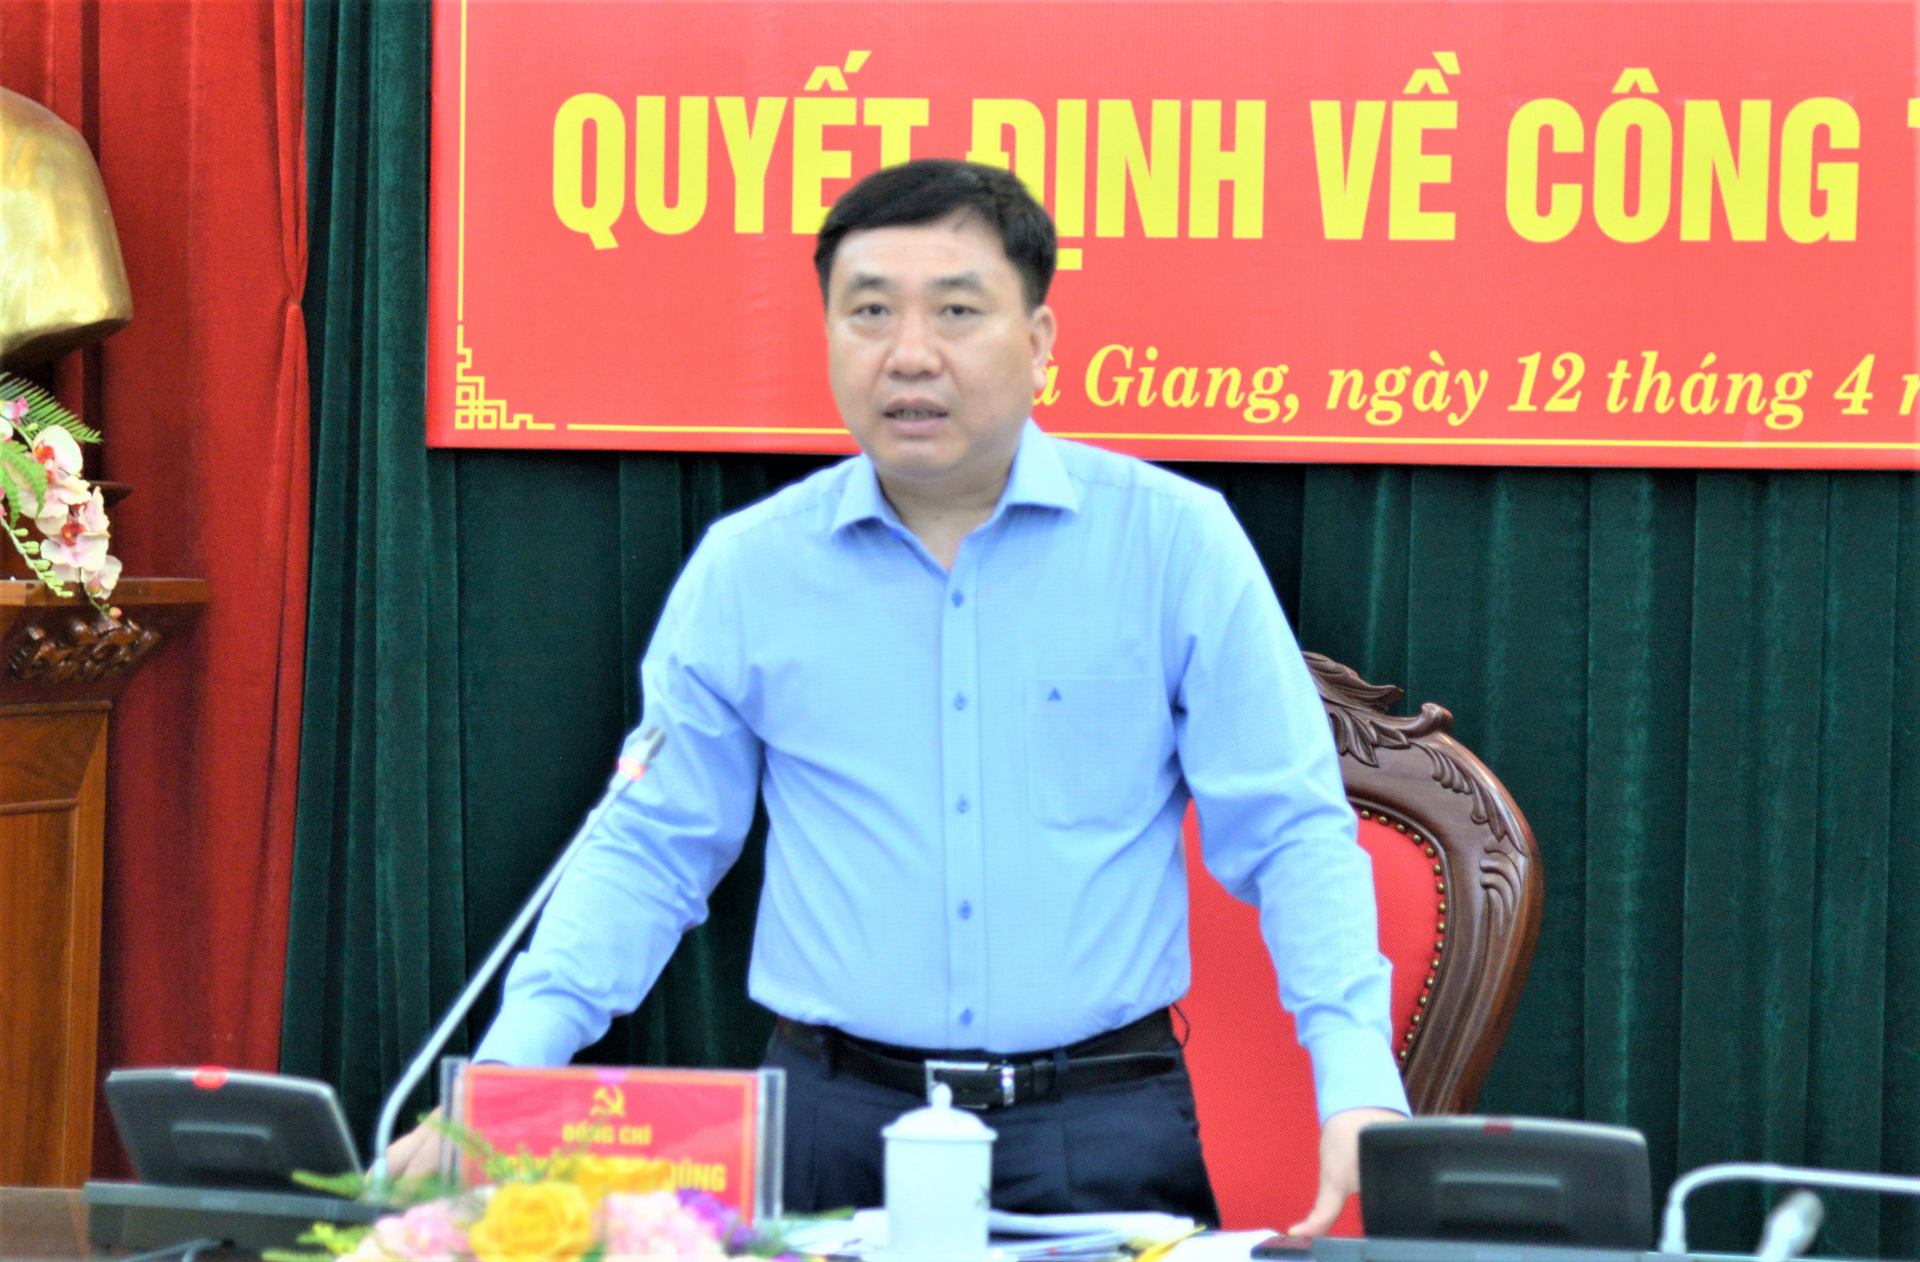 Phó Bí thư Tỉnh ủy Nguyễn Mạnh Dũng phát biểu giao nhiệm vụ cho đồng chí Nguyễn Hải Dương và Hoàng Thế Hanh